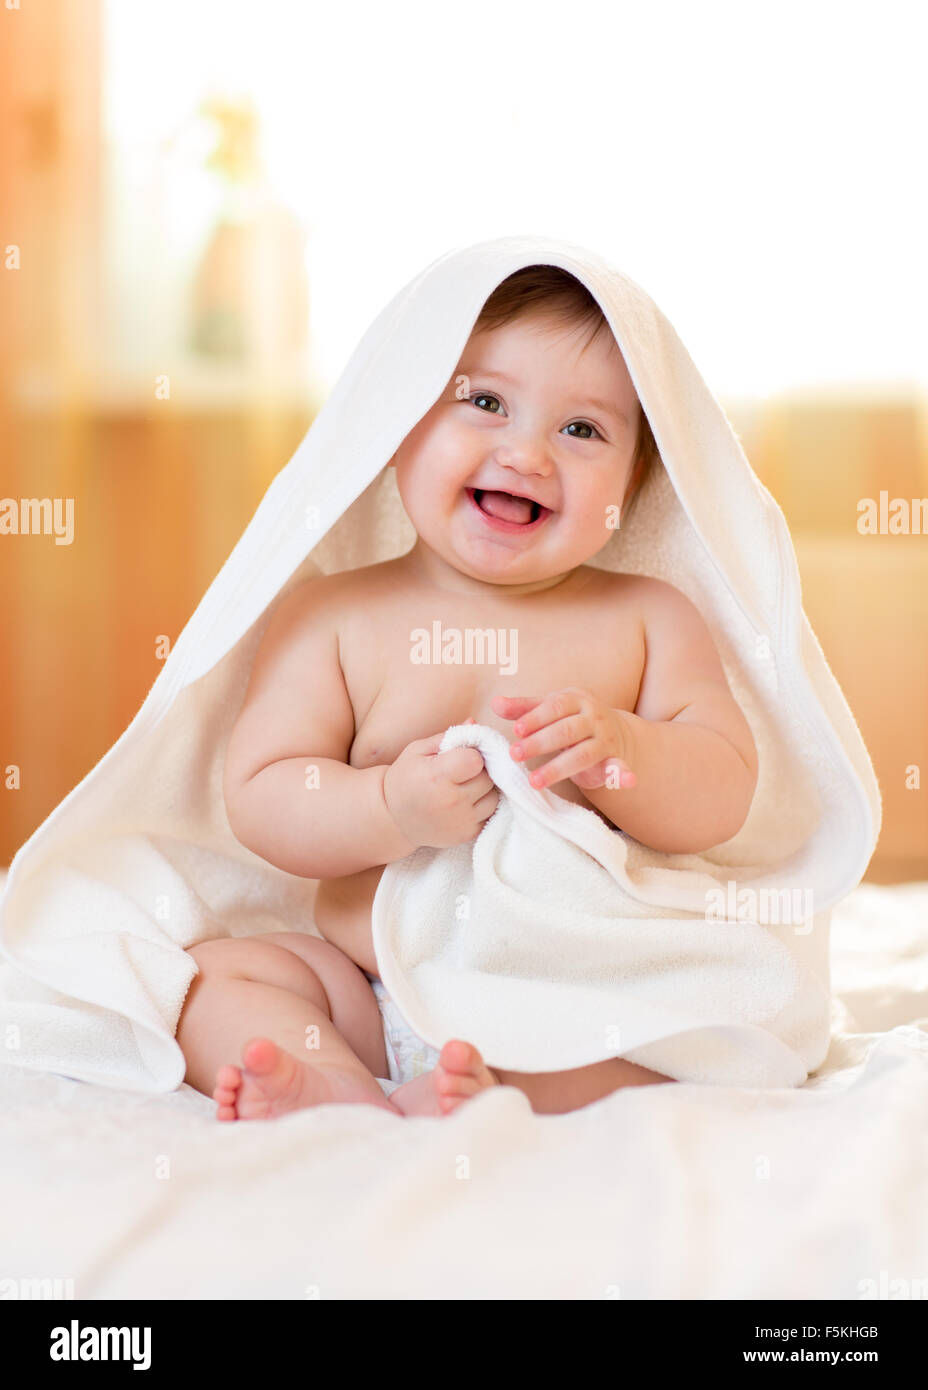 Lächelndes Babymädchen unter weißen Handtuch nach dem Baden Stockfoto